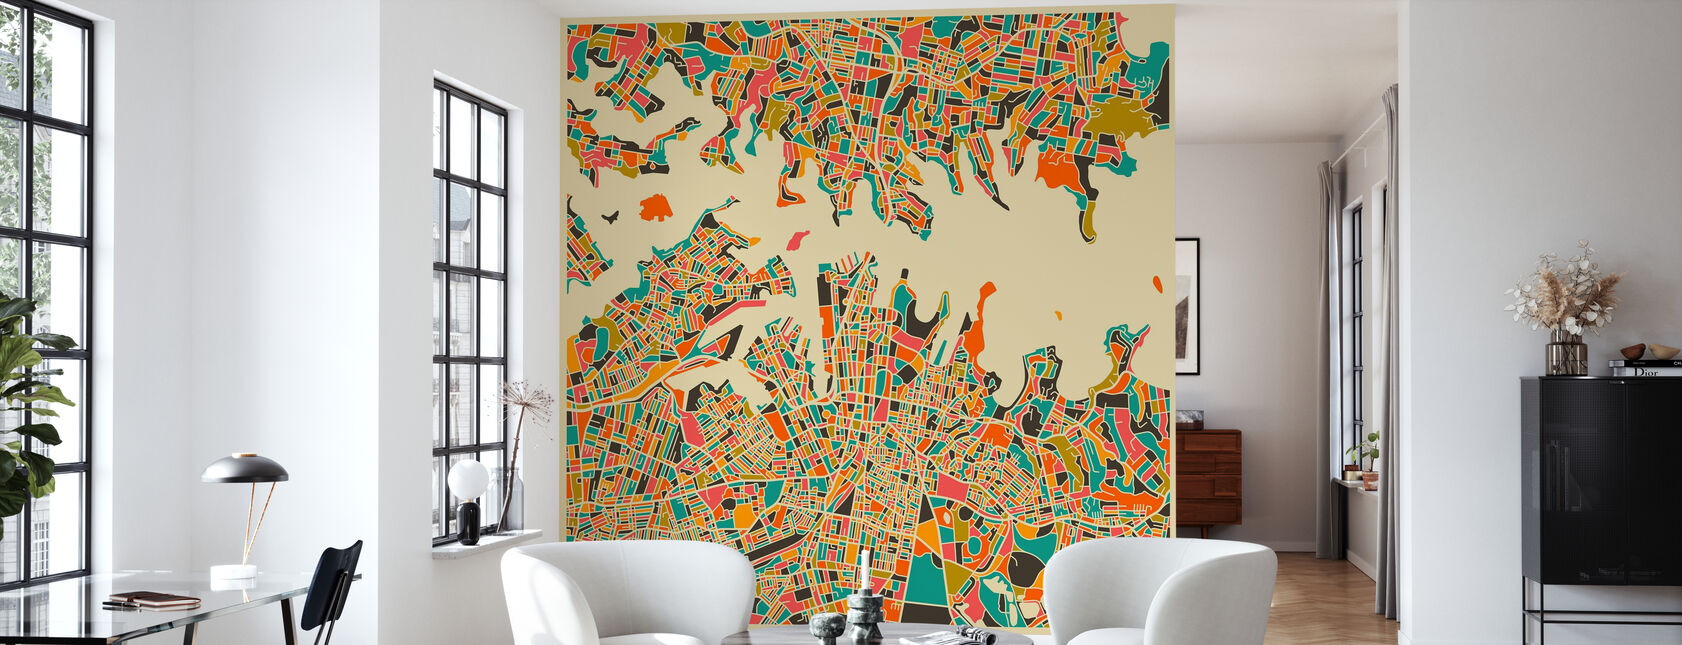 Mehrfarbige Karte - Sydney - Tapete - Wohnzimmer